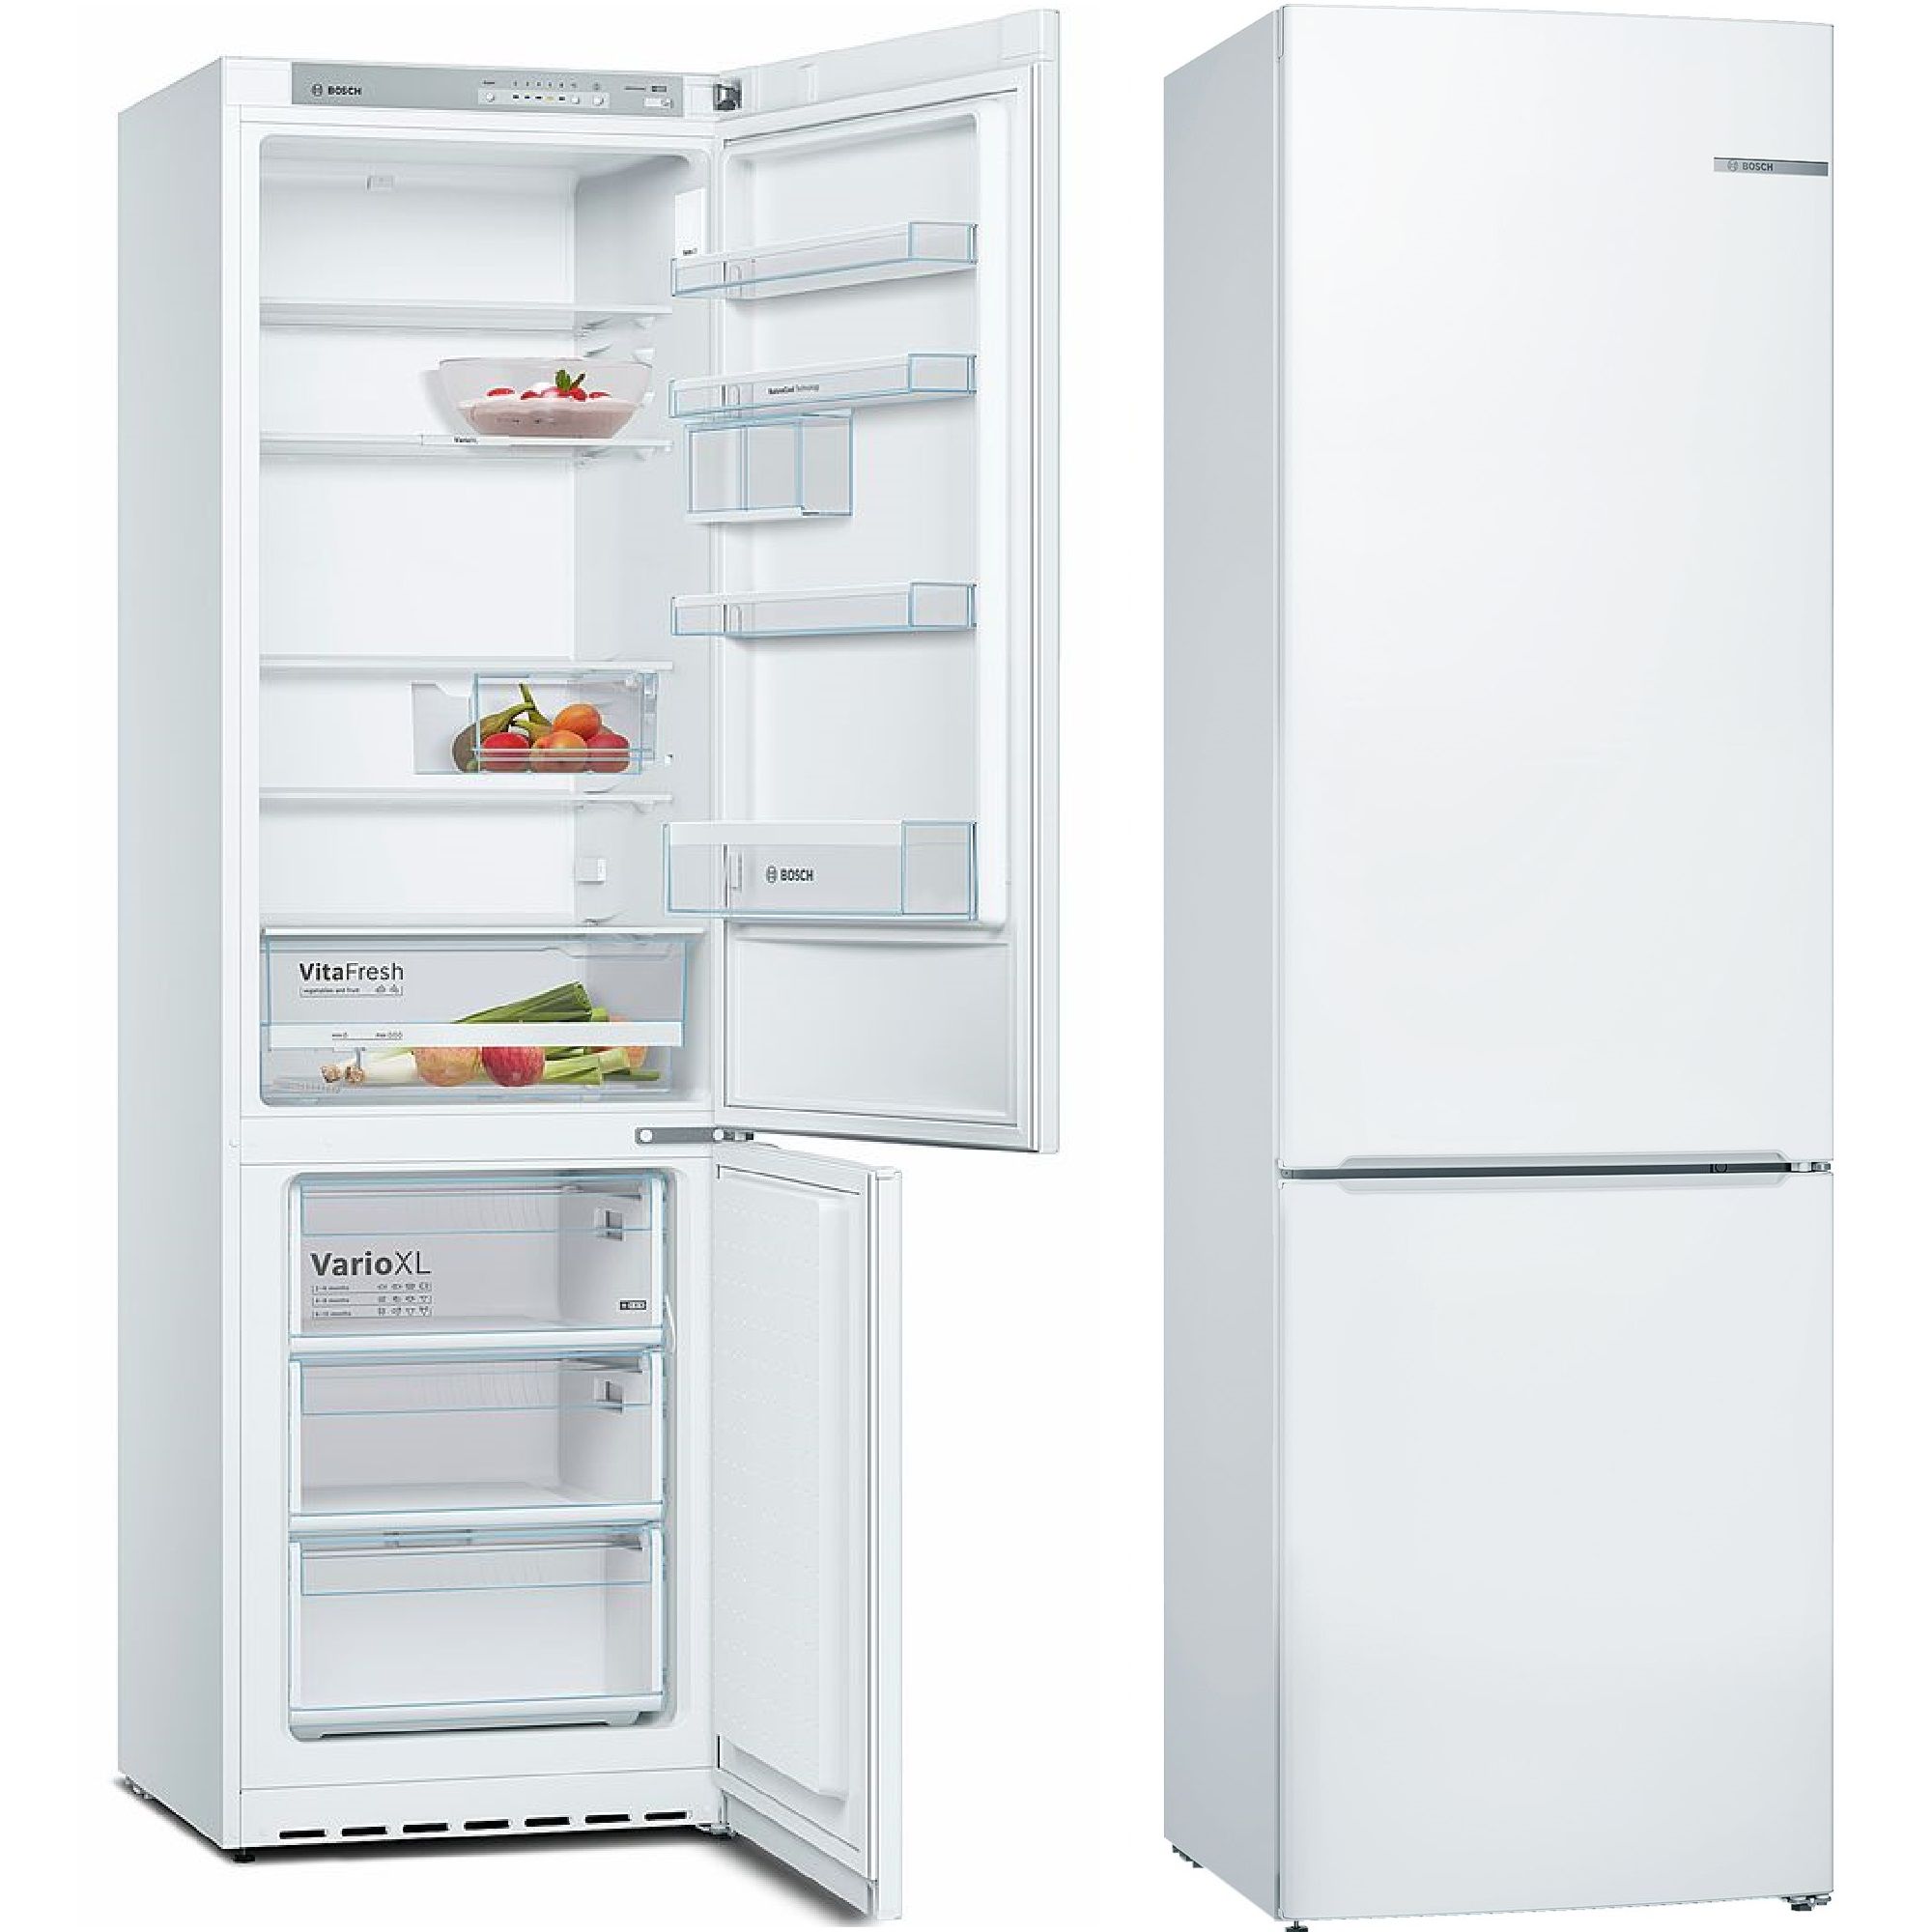 Bosch kgn49xi30u. Холодильник Bosch kgv39xw2ar. Холодильник Siemens kg36eal20r. Siemens kf18wa43. Купить холодильник высотой 180